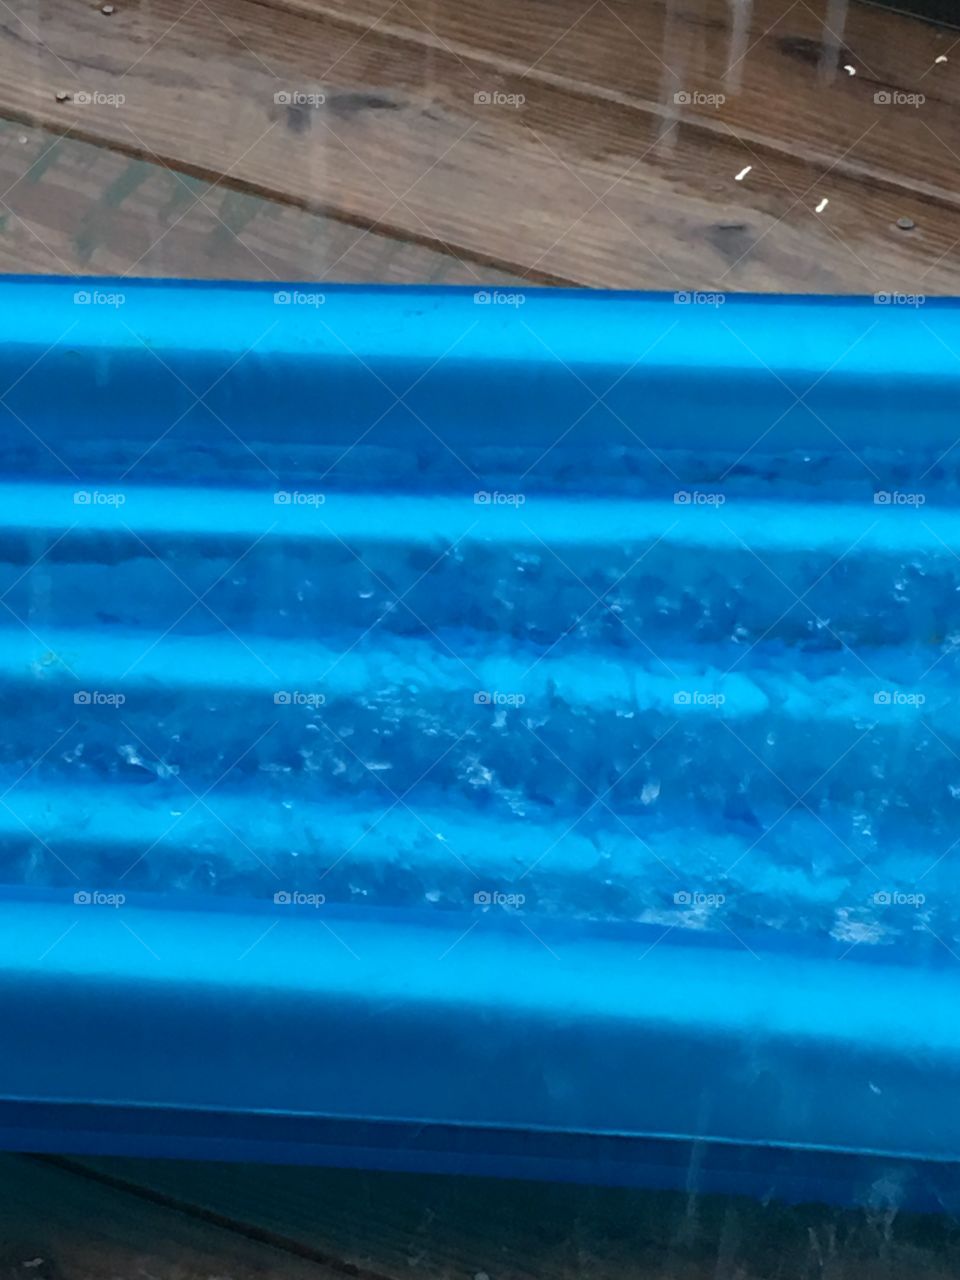 Hurricane Irma raining on pool float